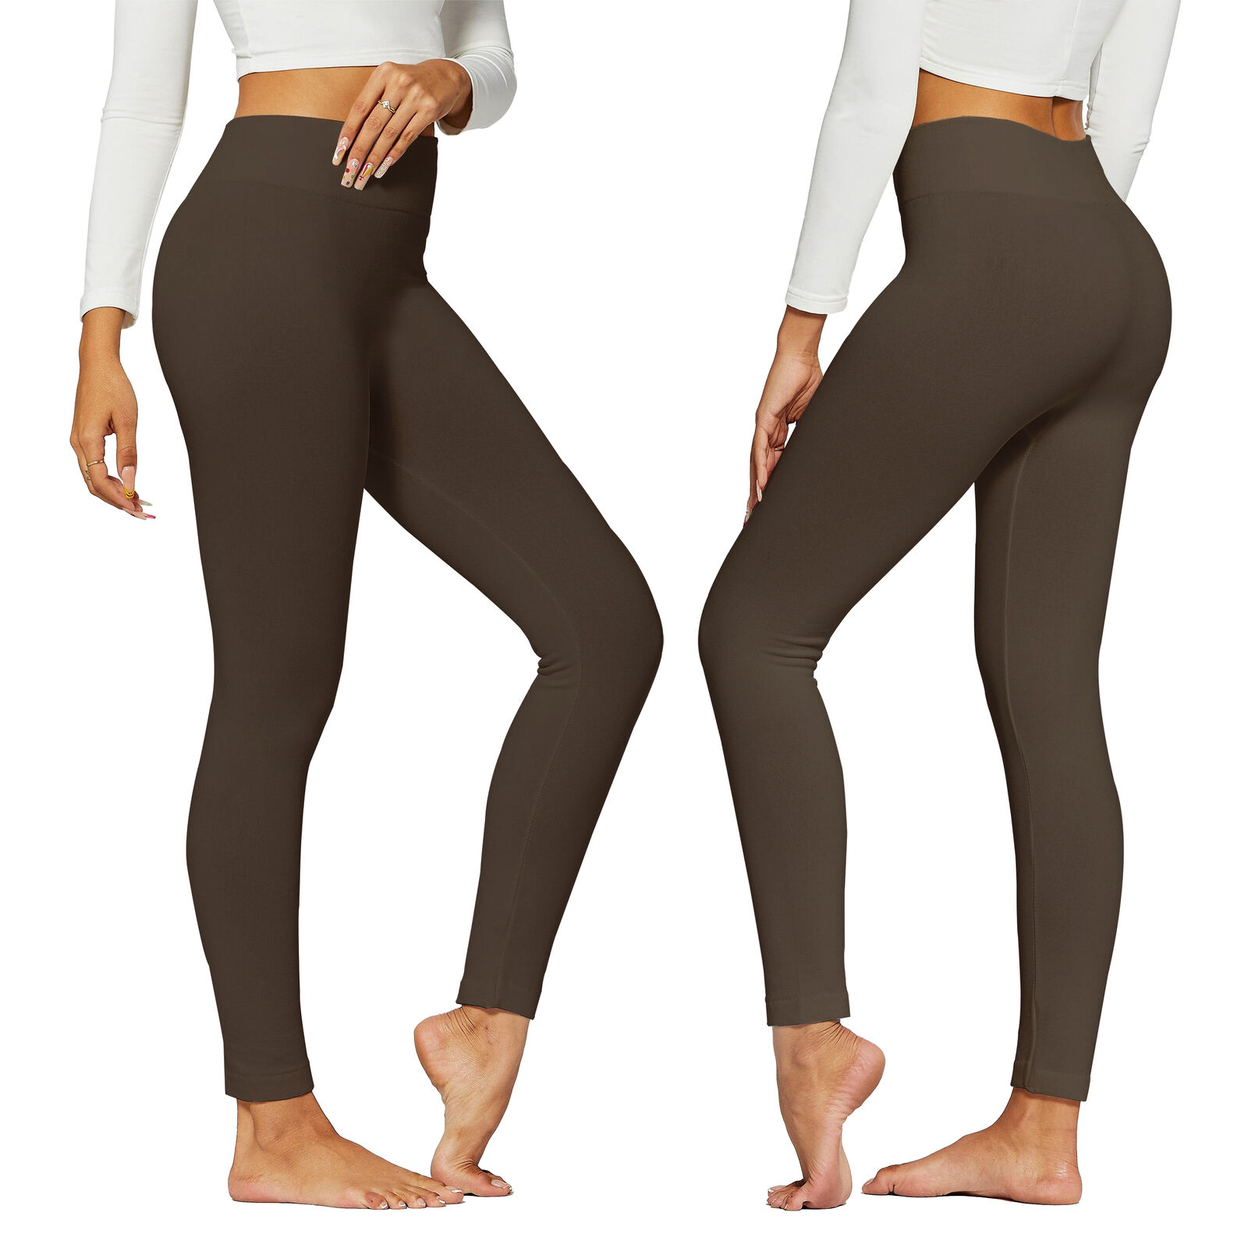 2-Pack: Women's Winter Warm High-Waist Soft Fleece Lined Leggings - Black & Brown, 3X